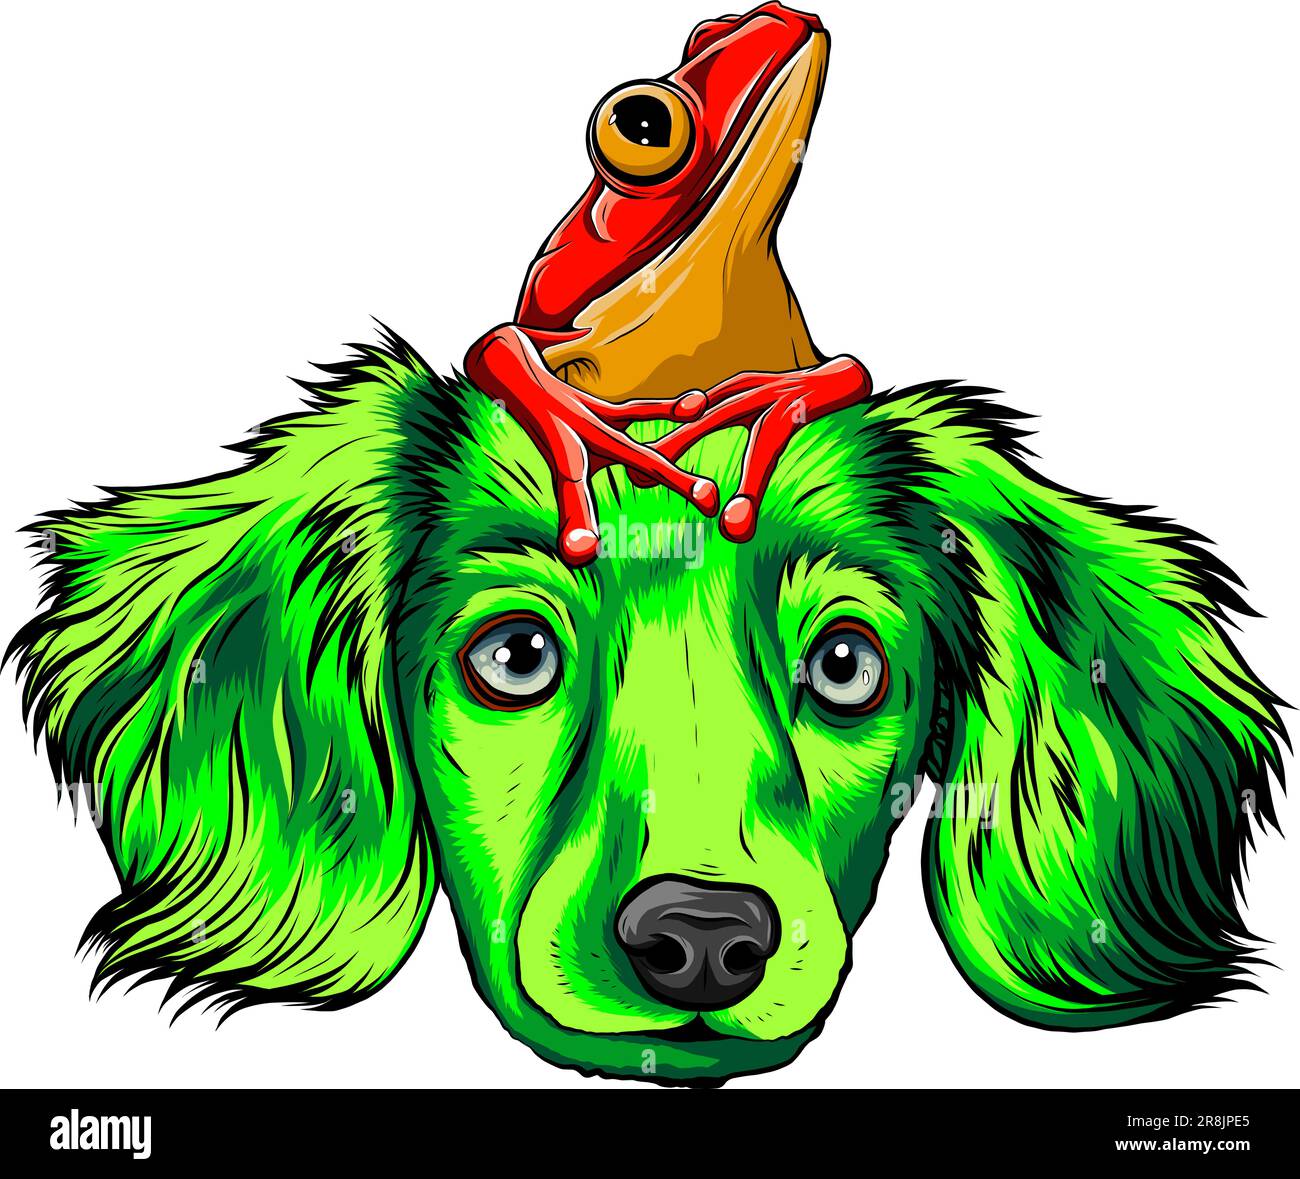 Cartoon-Design mit Hund und Frosch Stock Vektor